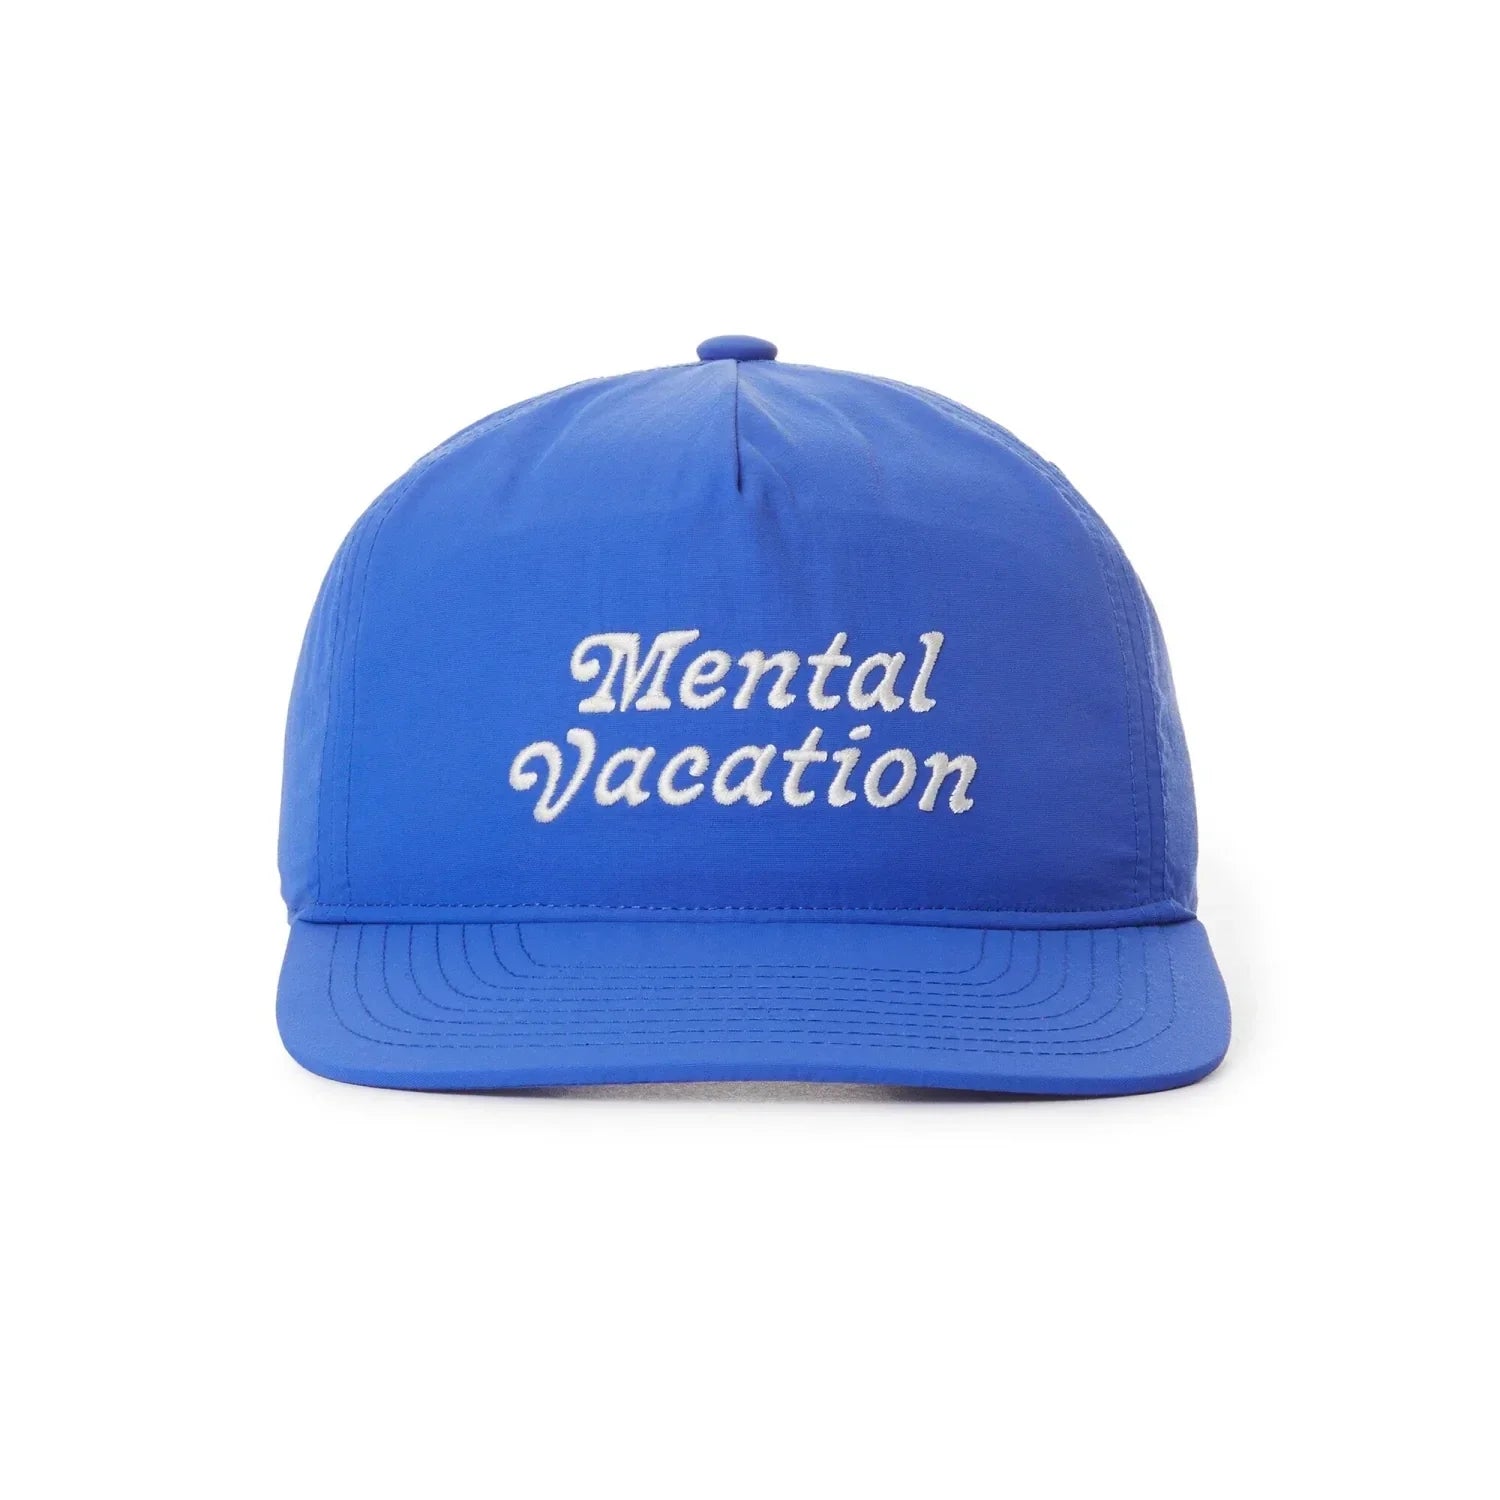 Katin HATS - HATS BILLED - HATS BILLED Mental Vacation Hat BAYB BAY BLUE O S